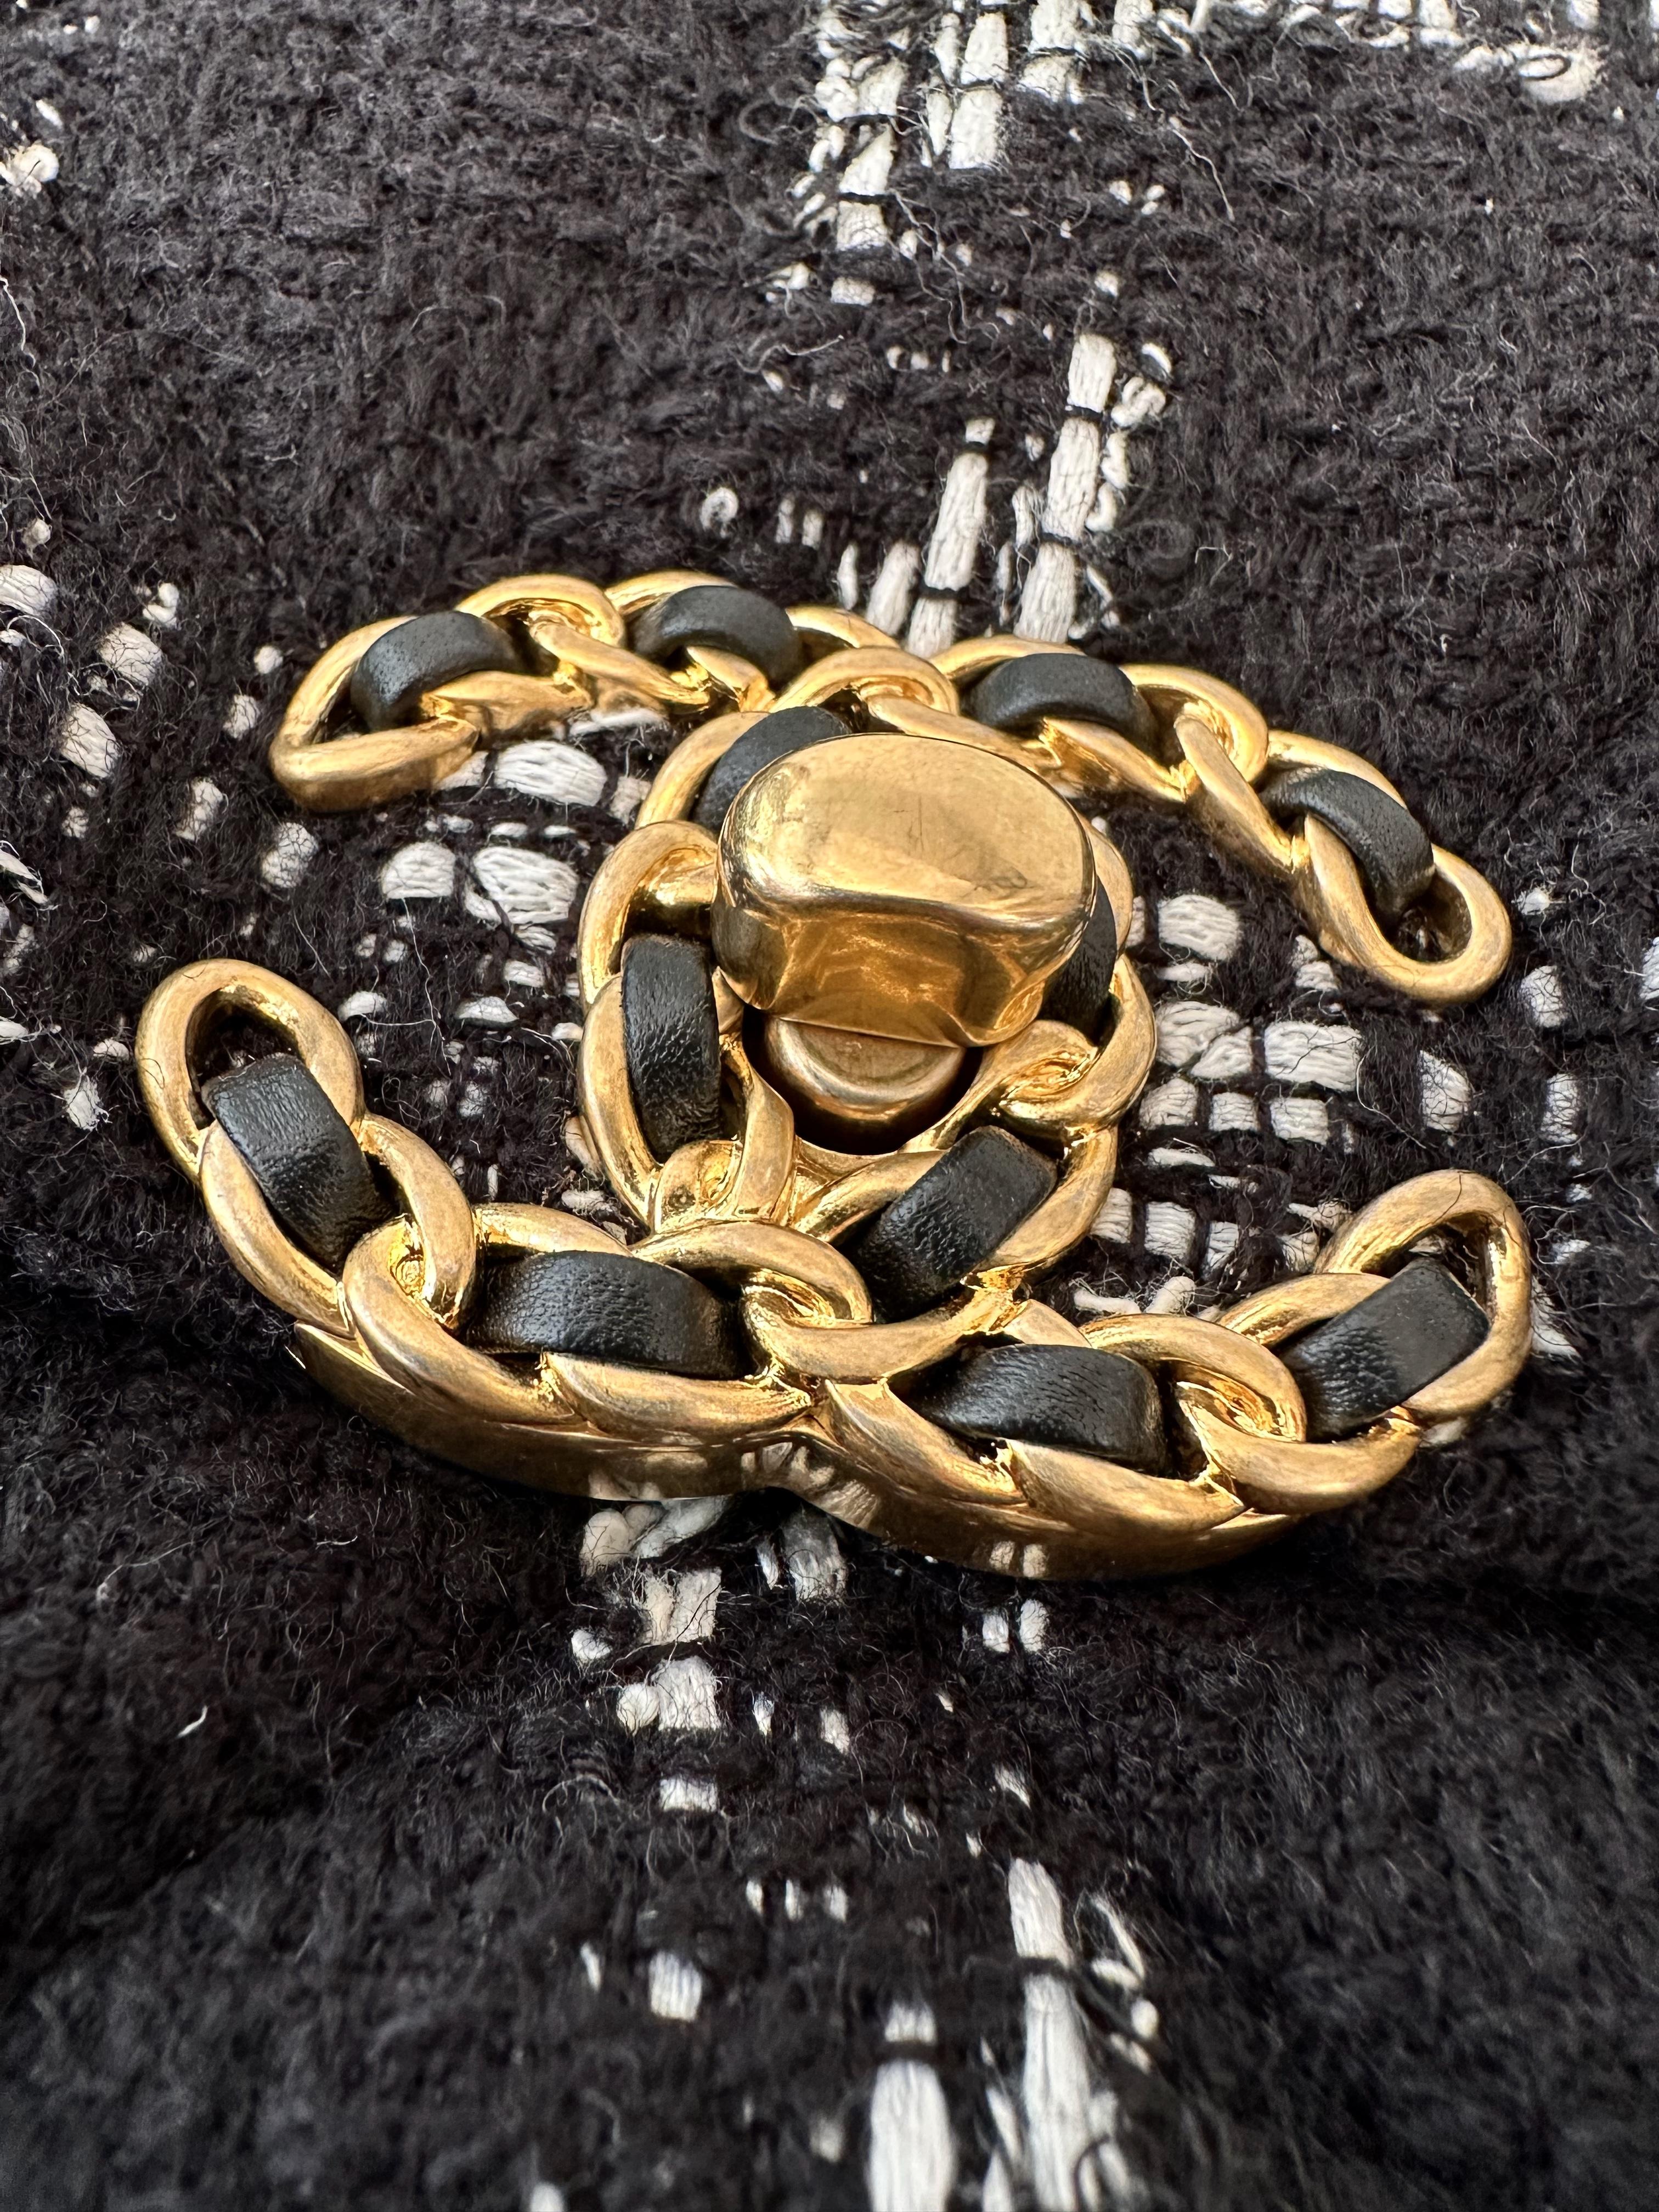 Ce grand sac à rabat Chanel 19 d'occasion est confectionné en tweed matelassé noir avec un motif blanc en forme de losange. 
Il est doté d'une poignée supérieure en chaîne dorée de 10 cm (environ 3,9